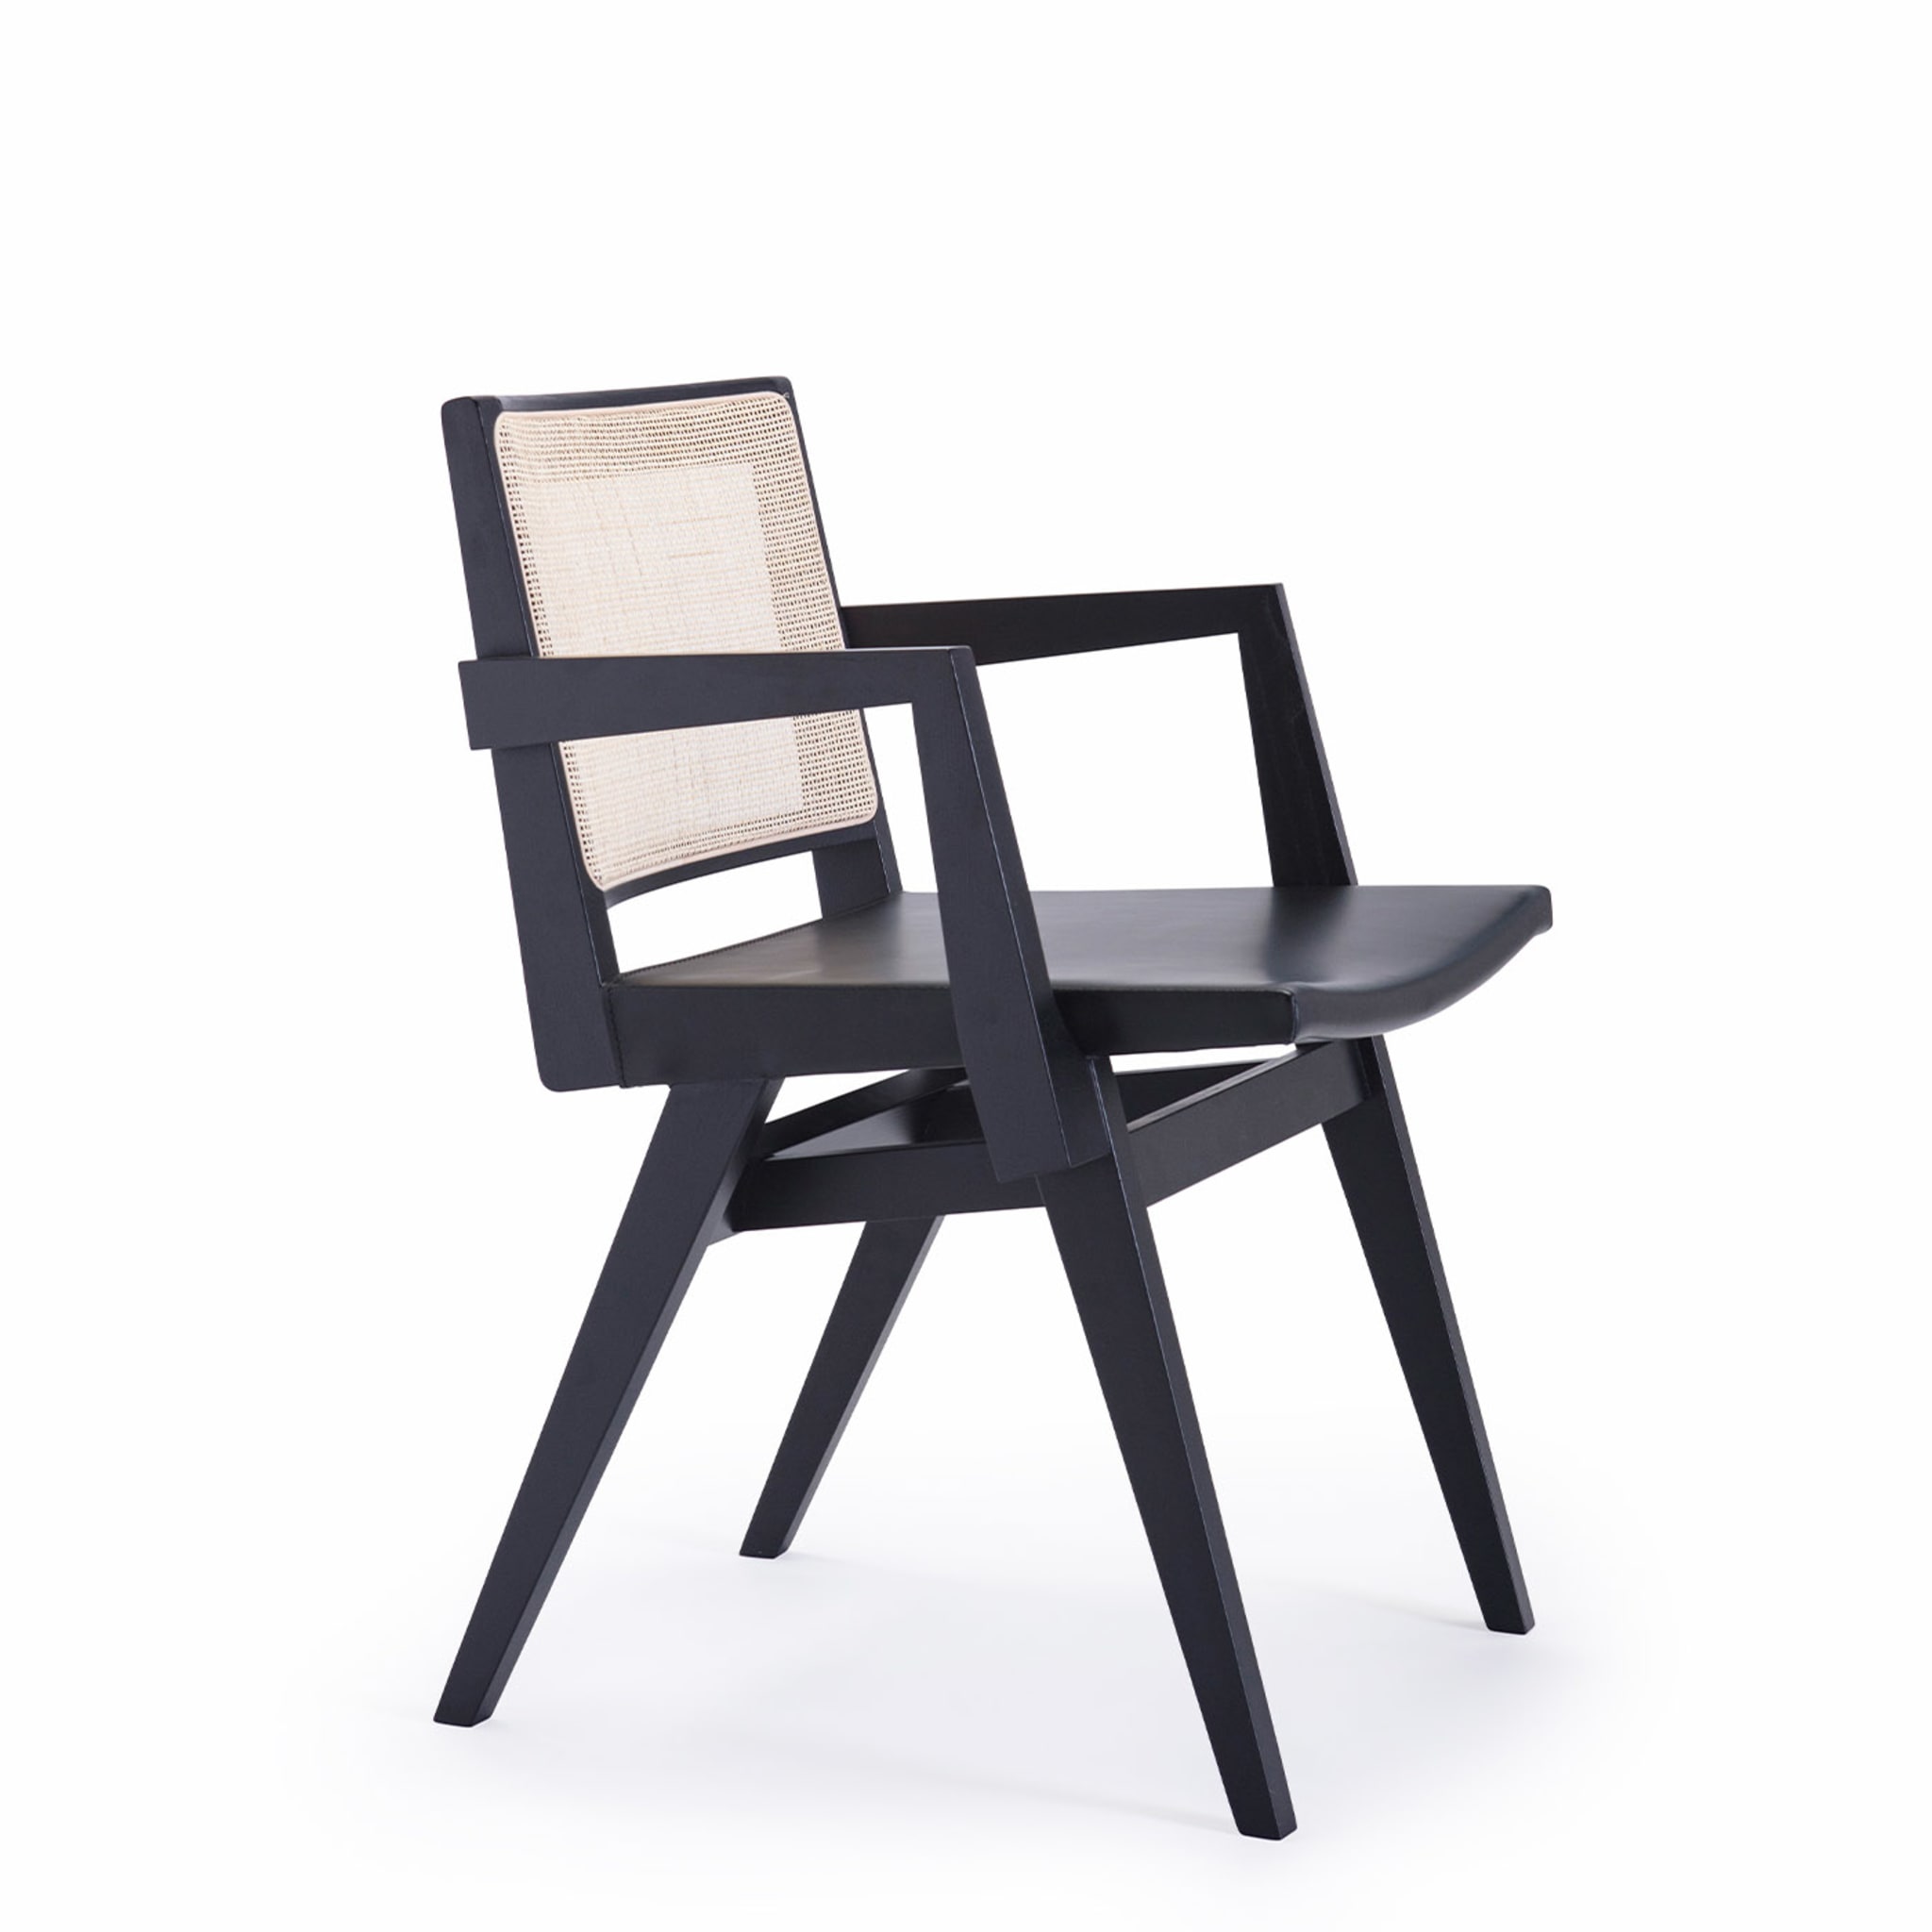 Dorothea/P Chaise noire - Vue alternative 1